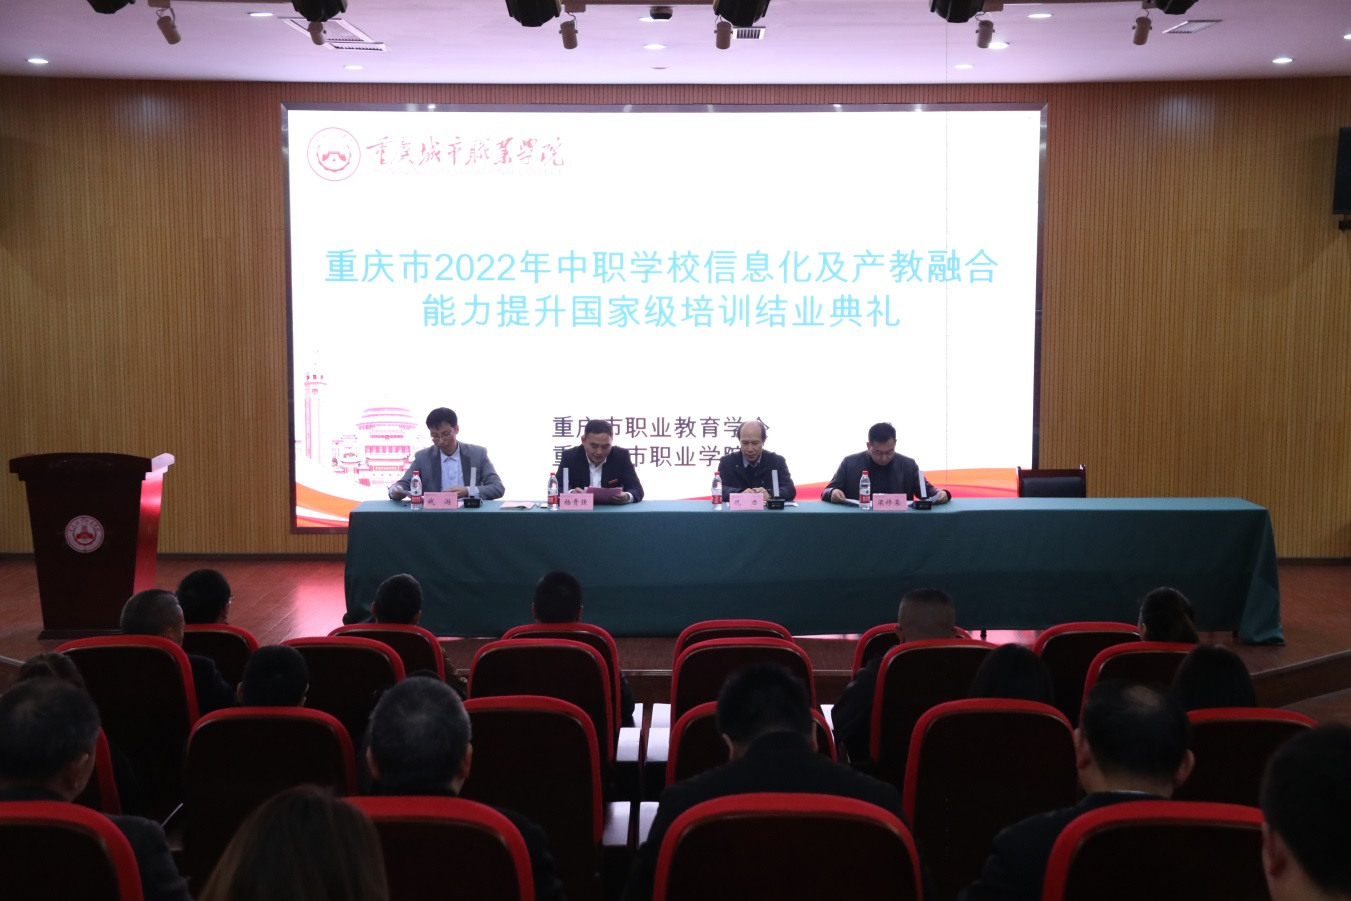 重庆市2022年中职学校信息化及产教融合能力提升国家级培训结业典礼在学校举行